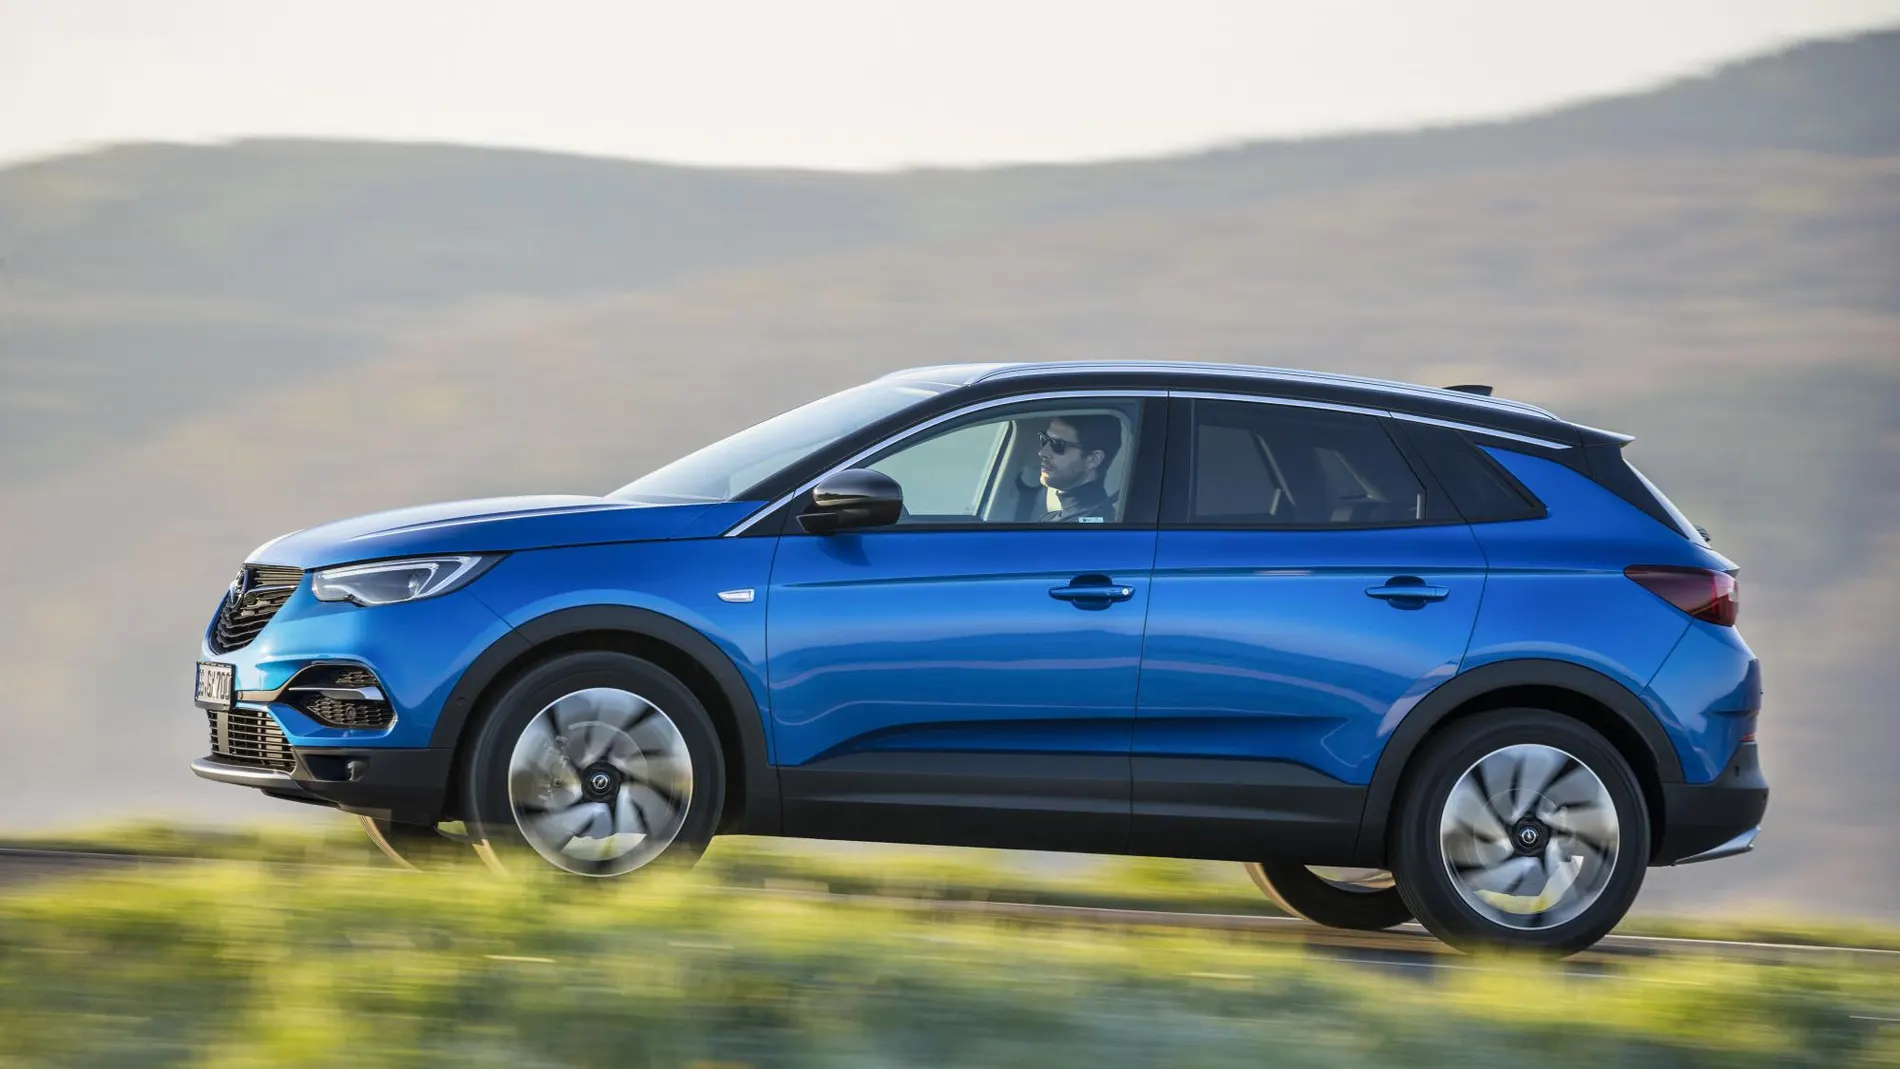 Opel convierte el Grandland X en uno de los más eficientes de su categoría